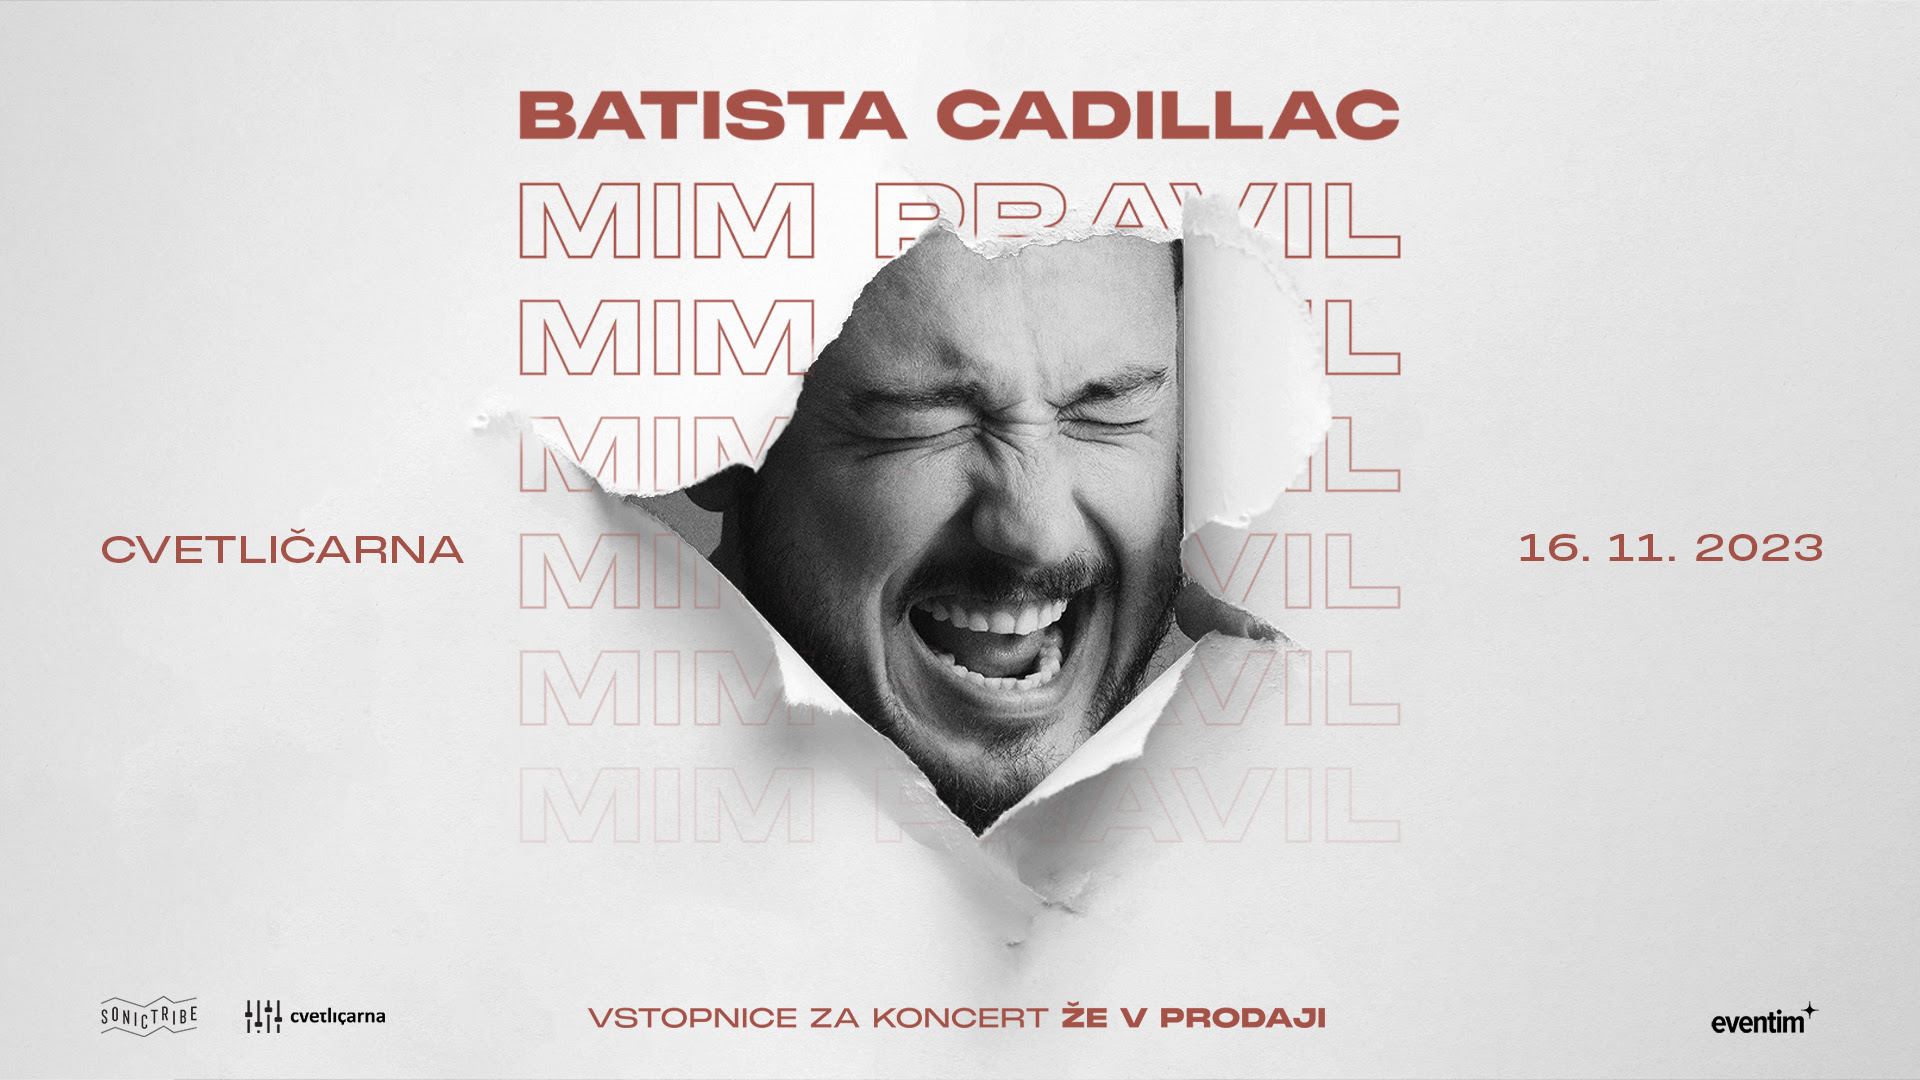 MIM PRAVIL - Batista Cadillac v ljubljanski Cvetličarni